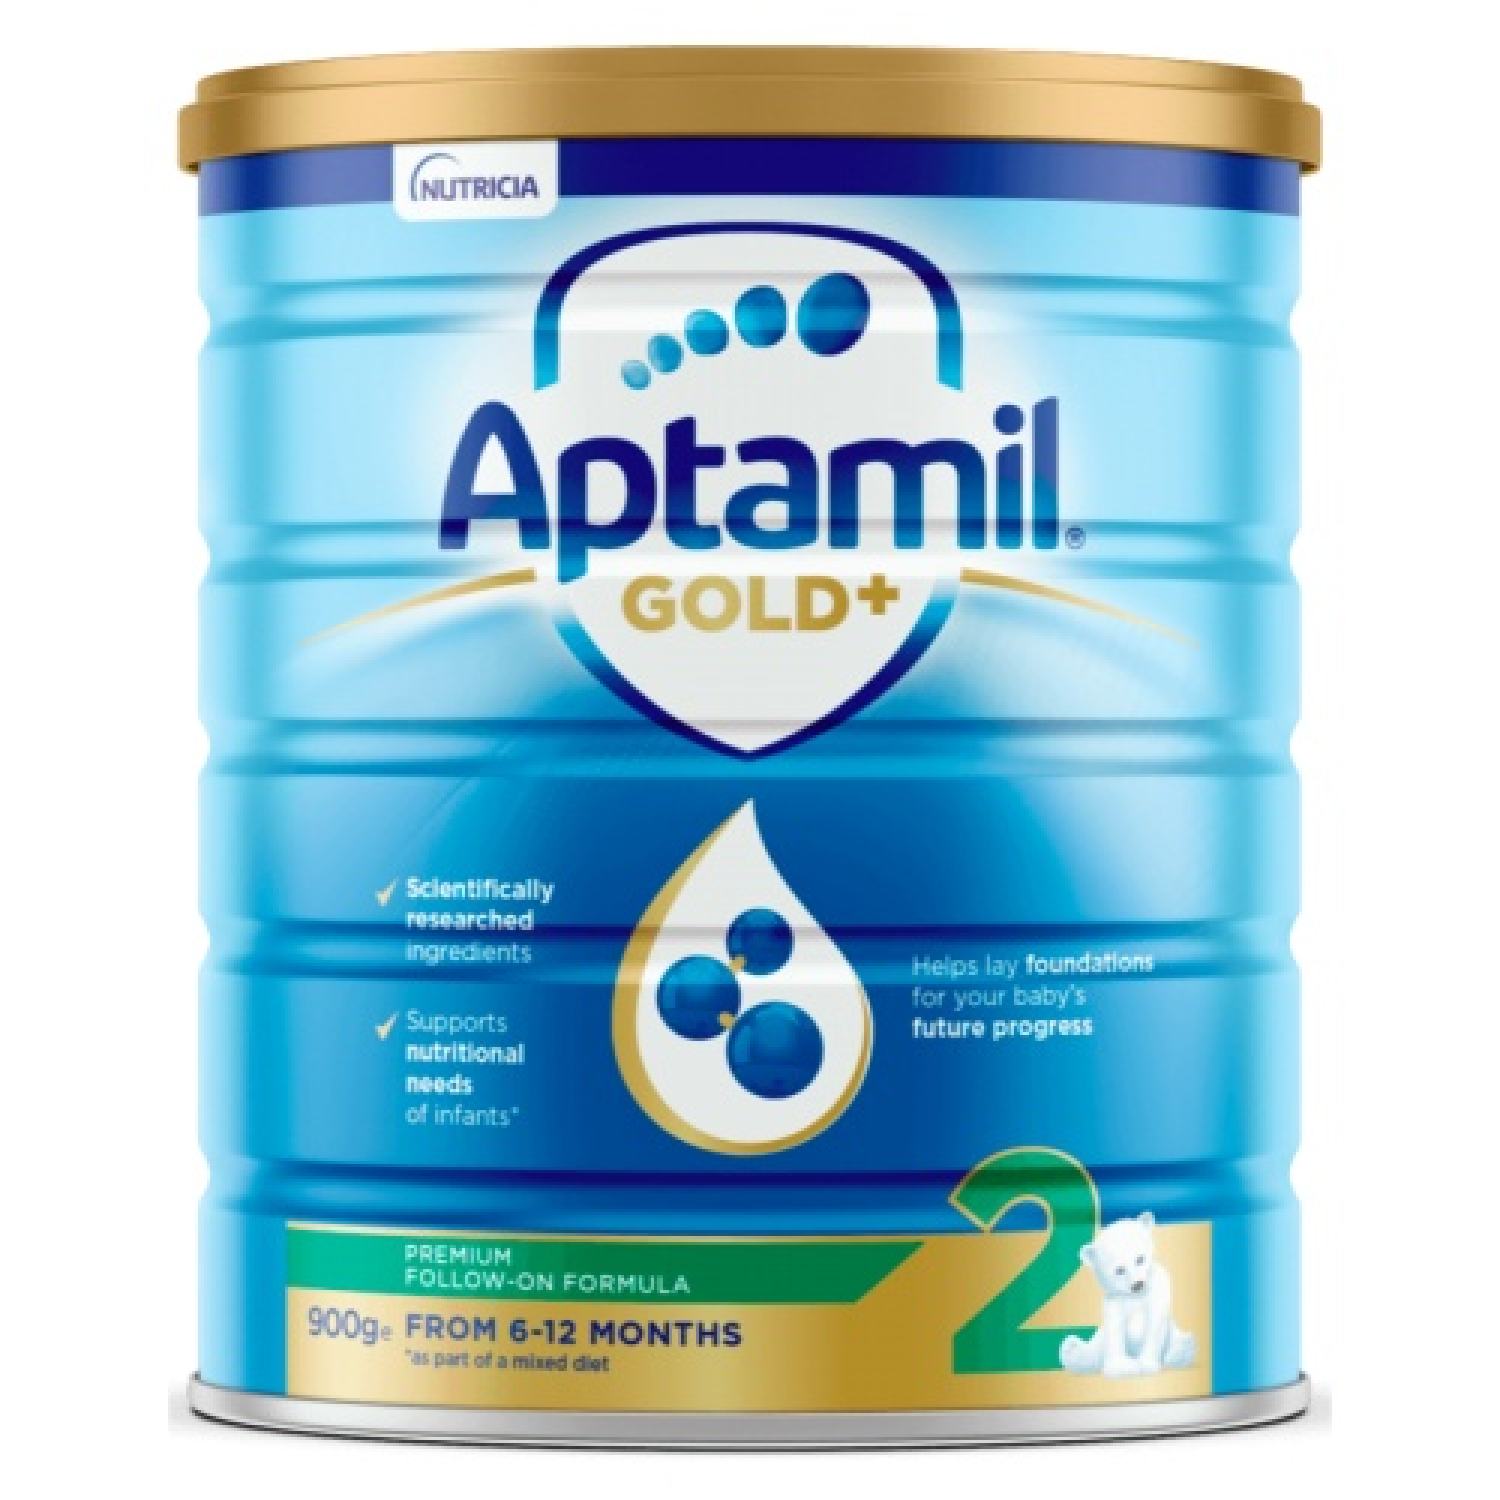 Sữa Aptamil gold số 2 dành cho trẻ 6-12 tháng tuổi